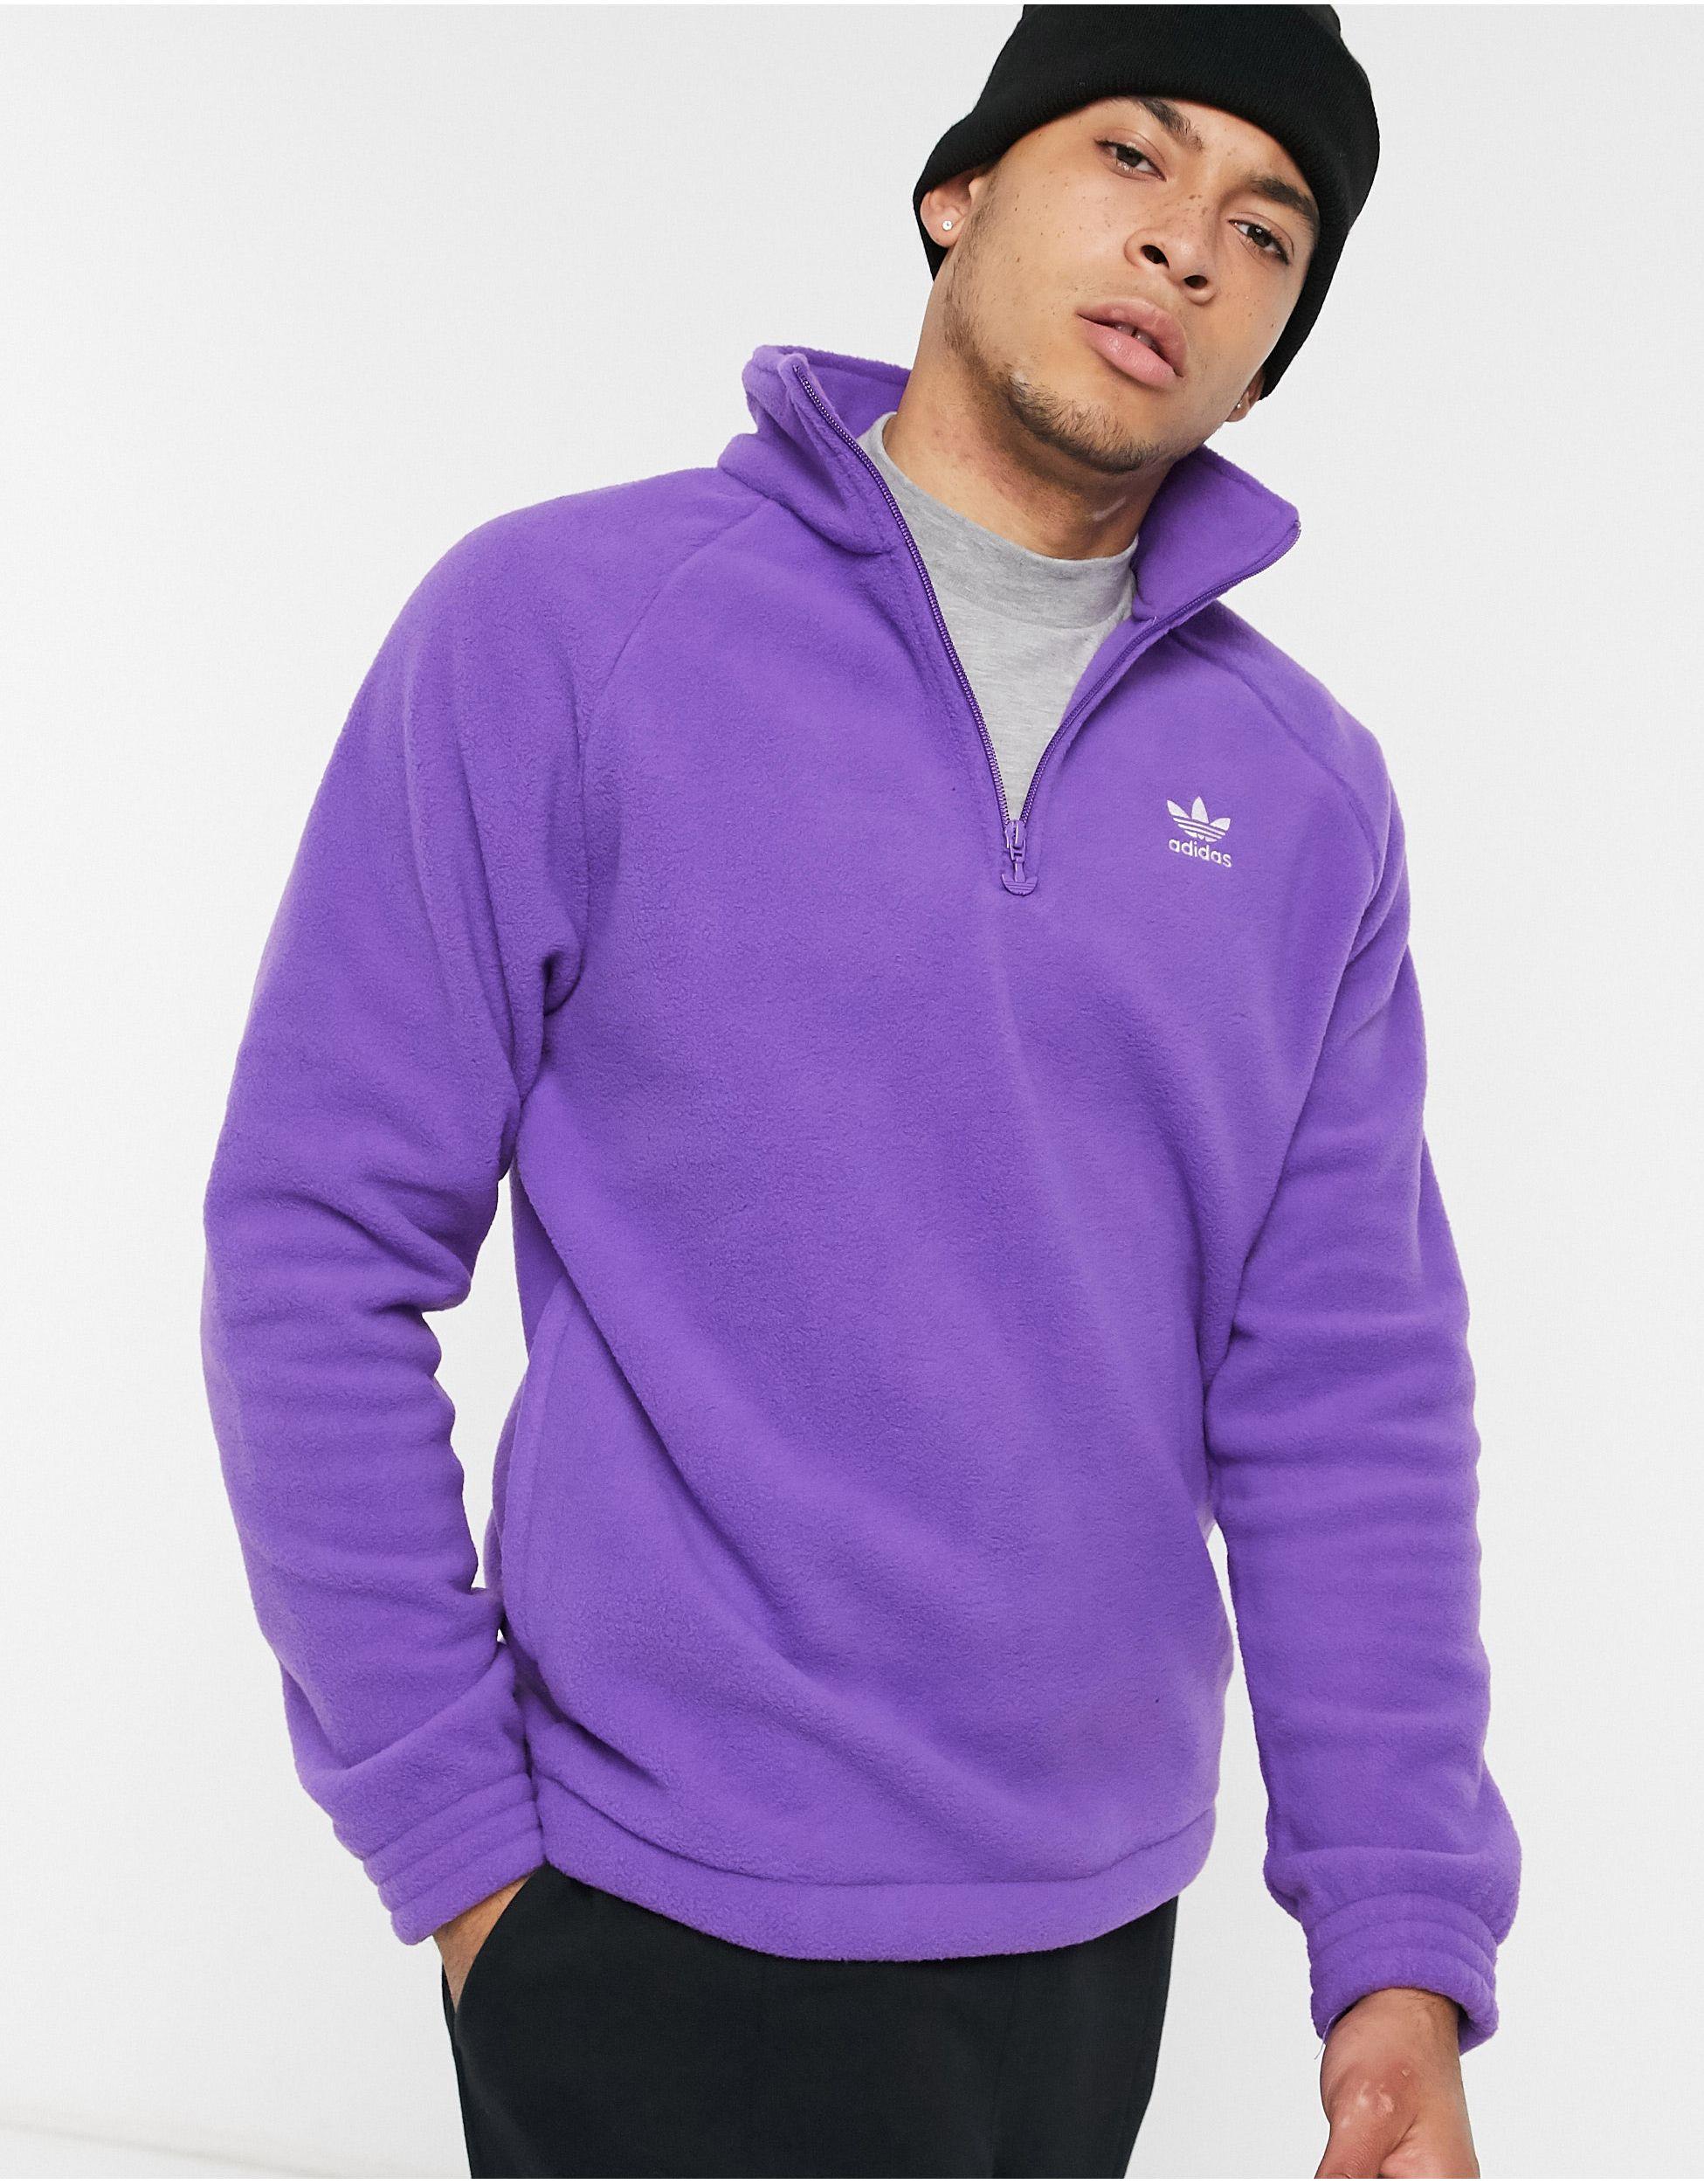 adidas Originals 1/4 Zip Fleece in White (Purple) for Men - Lyst